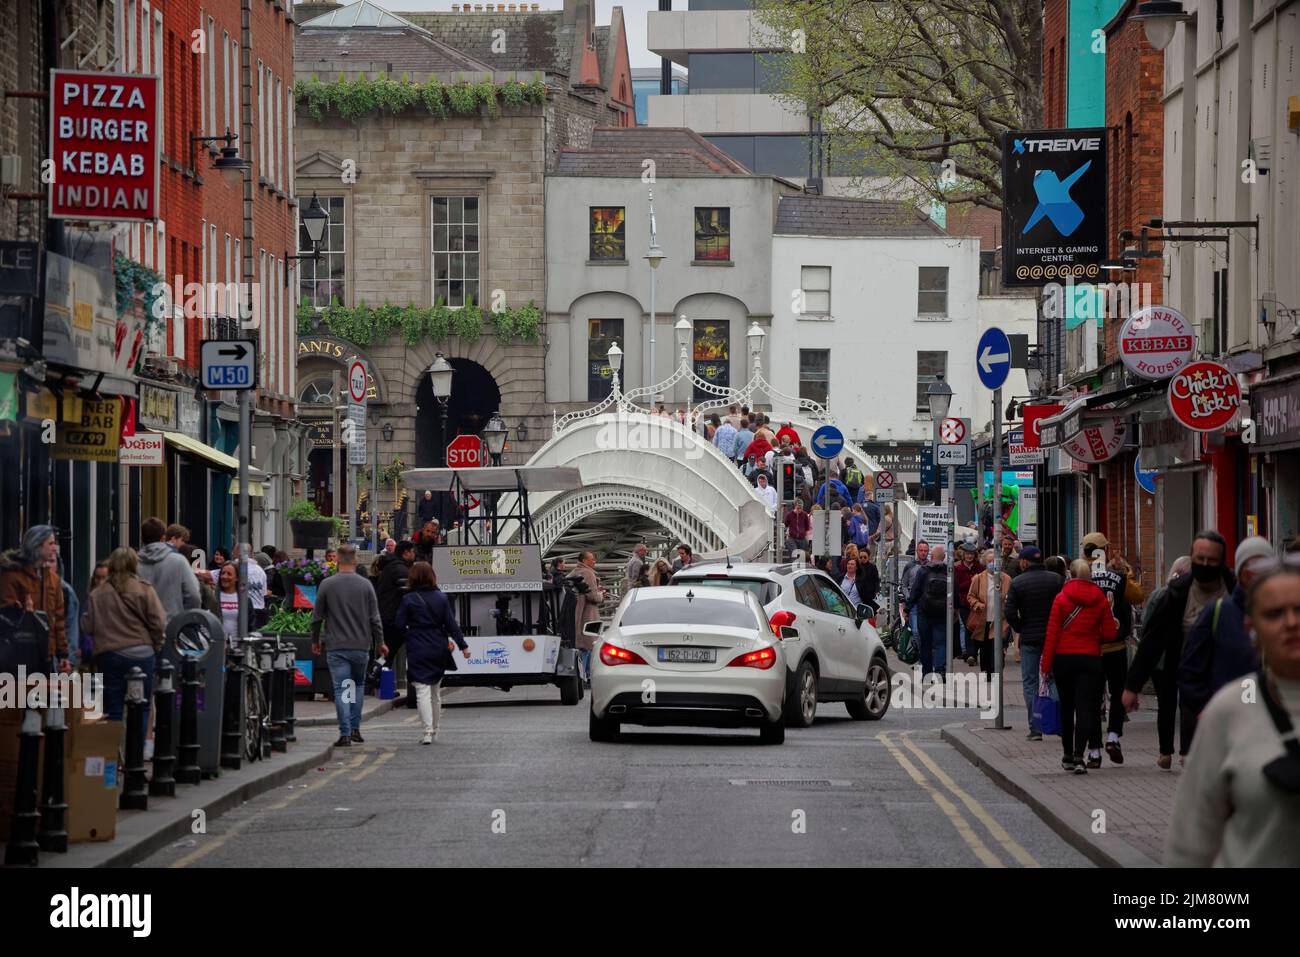 En regardant la rue Liffey Lower avec Ha'penny Bridge à la fin. Les gens marchent sur les trottoirs. Rue animée dans le centre-ville de Dublin. Banque D'Images